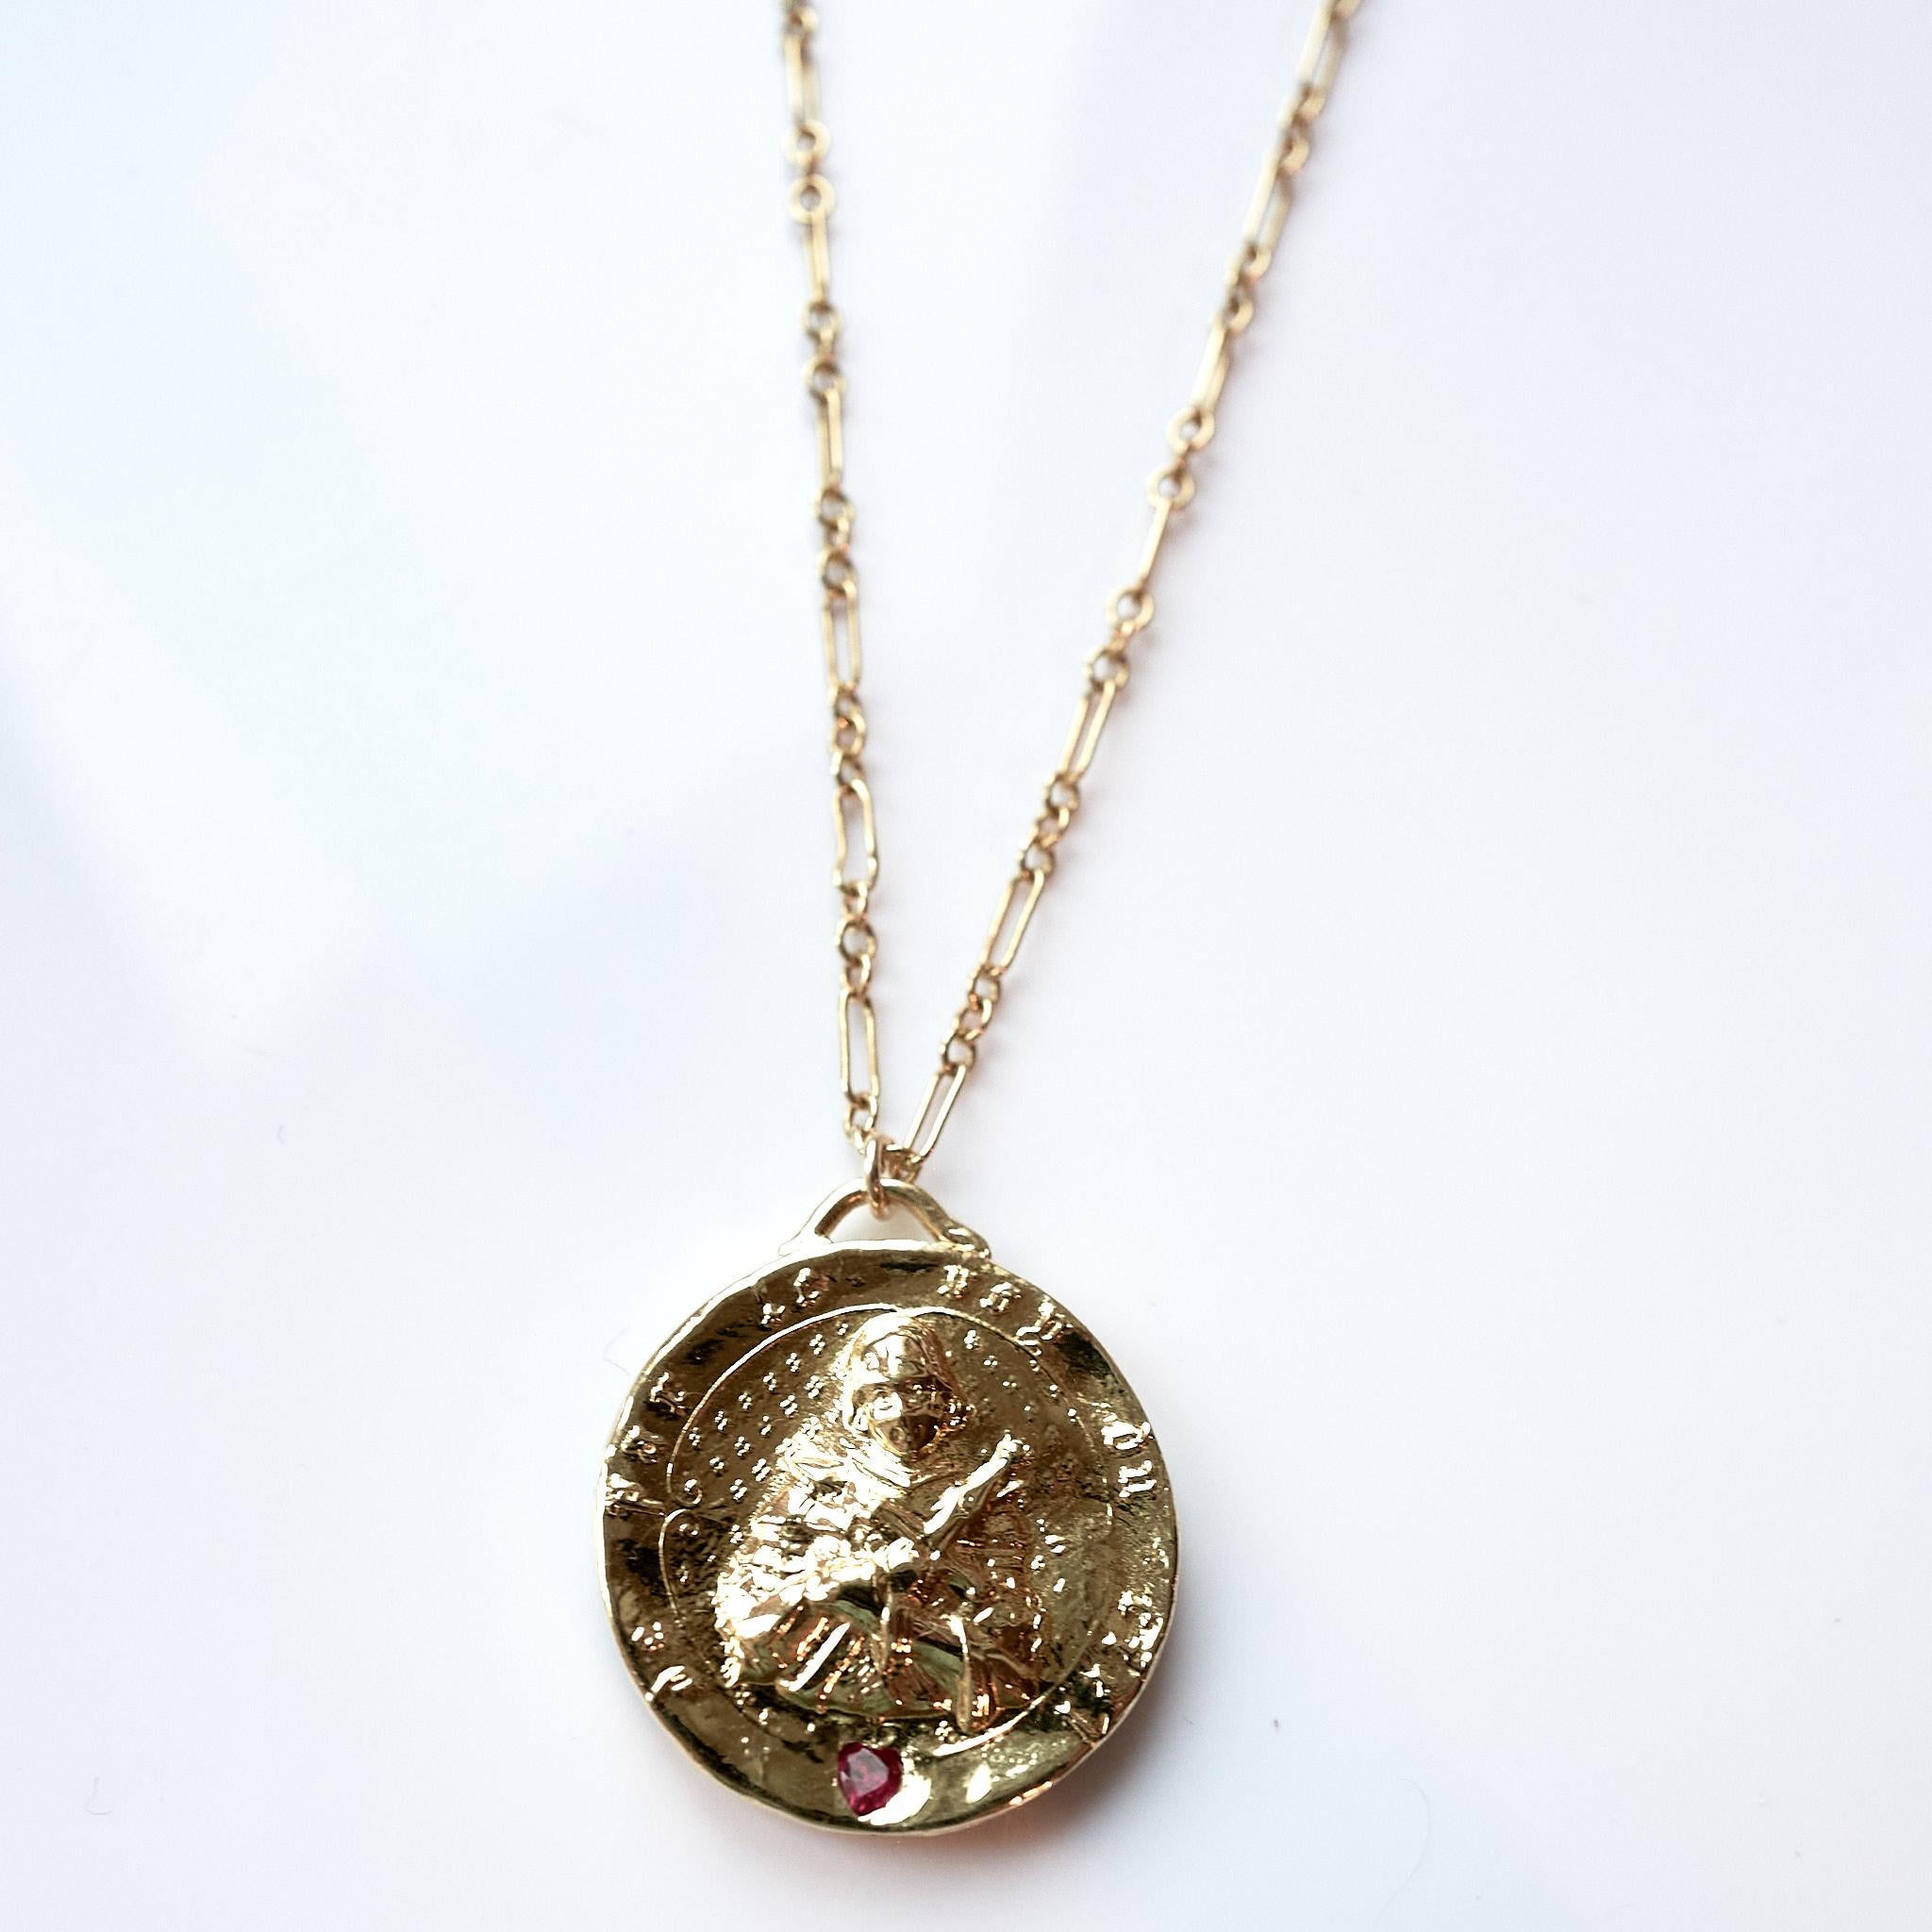 Collier Médaille Coeur Rubis Jeanne d'Arc plaqué or sur une chaîne remplie d'or 
Designer : J DAUPHIN
28